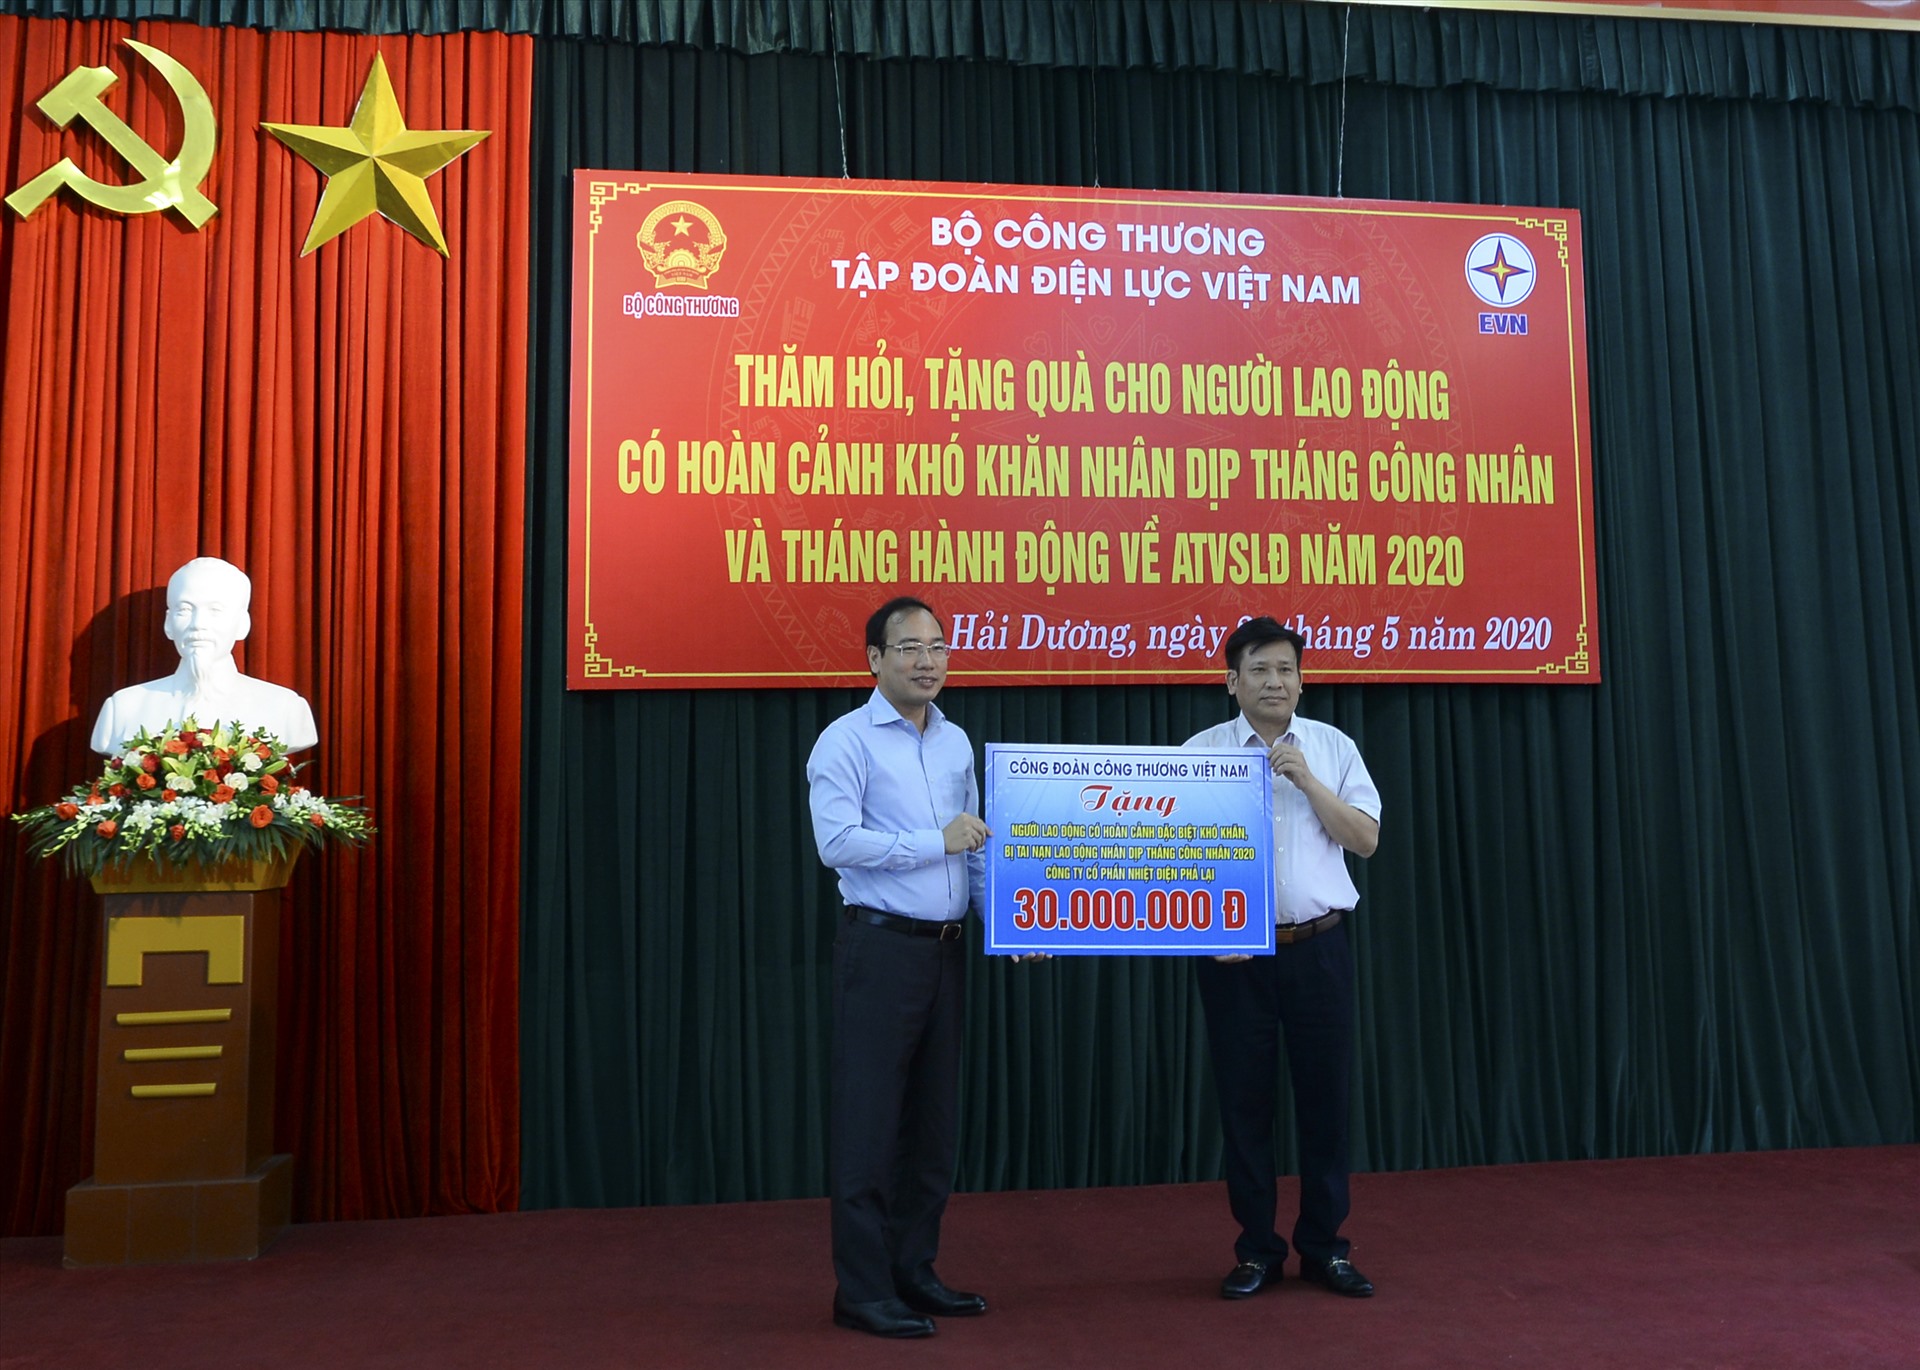 Đồng chí Trần Quang Huy - Uỷ viên Đoàn Chủ tịch Tổng LĐLĐVN, Chủ tịch Công đoàn Công thương Việt Nam (bên trái) trao quà cho đại diện CBCNV Cty nhiệt điện Phả Lại. Ảnh: Đắc Cường